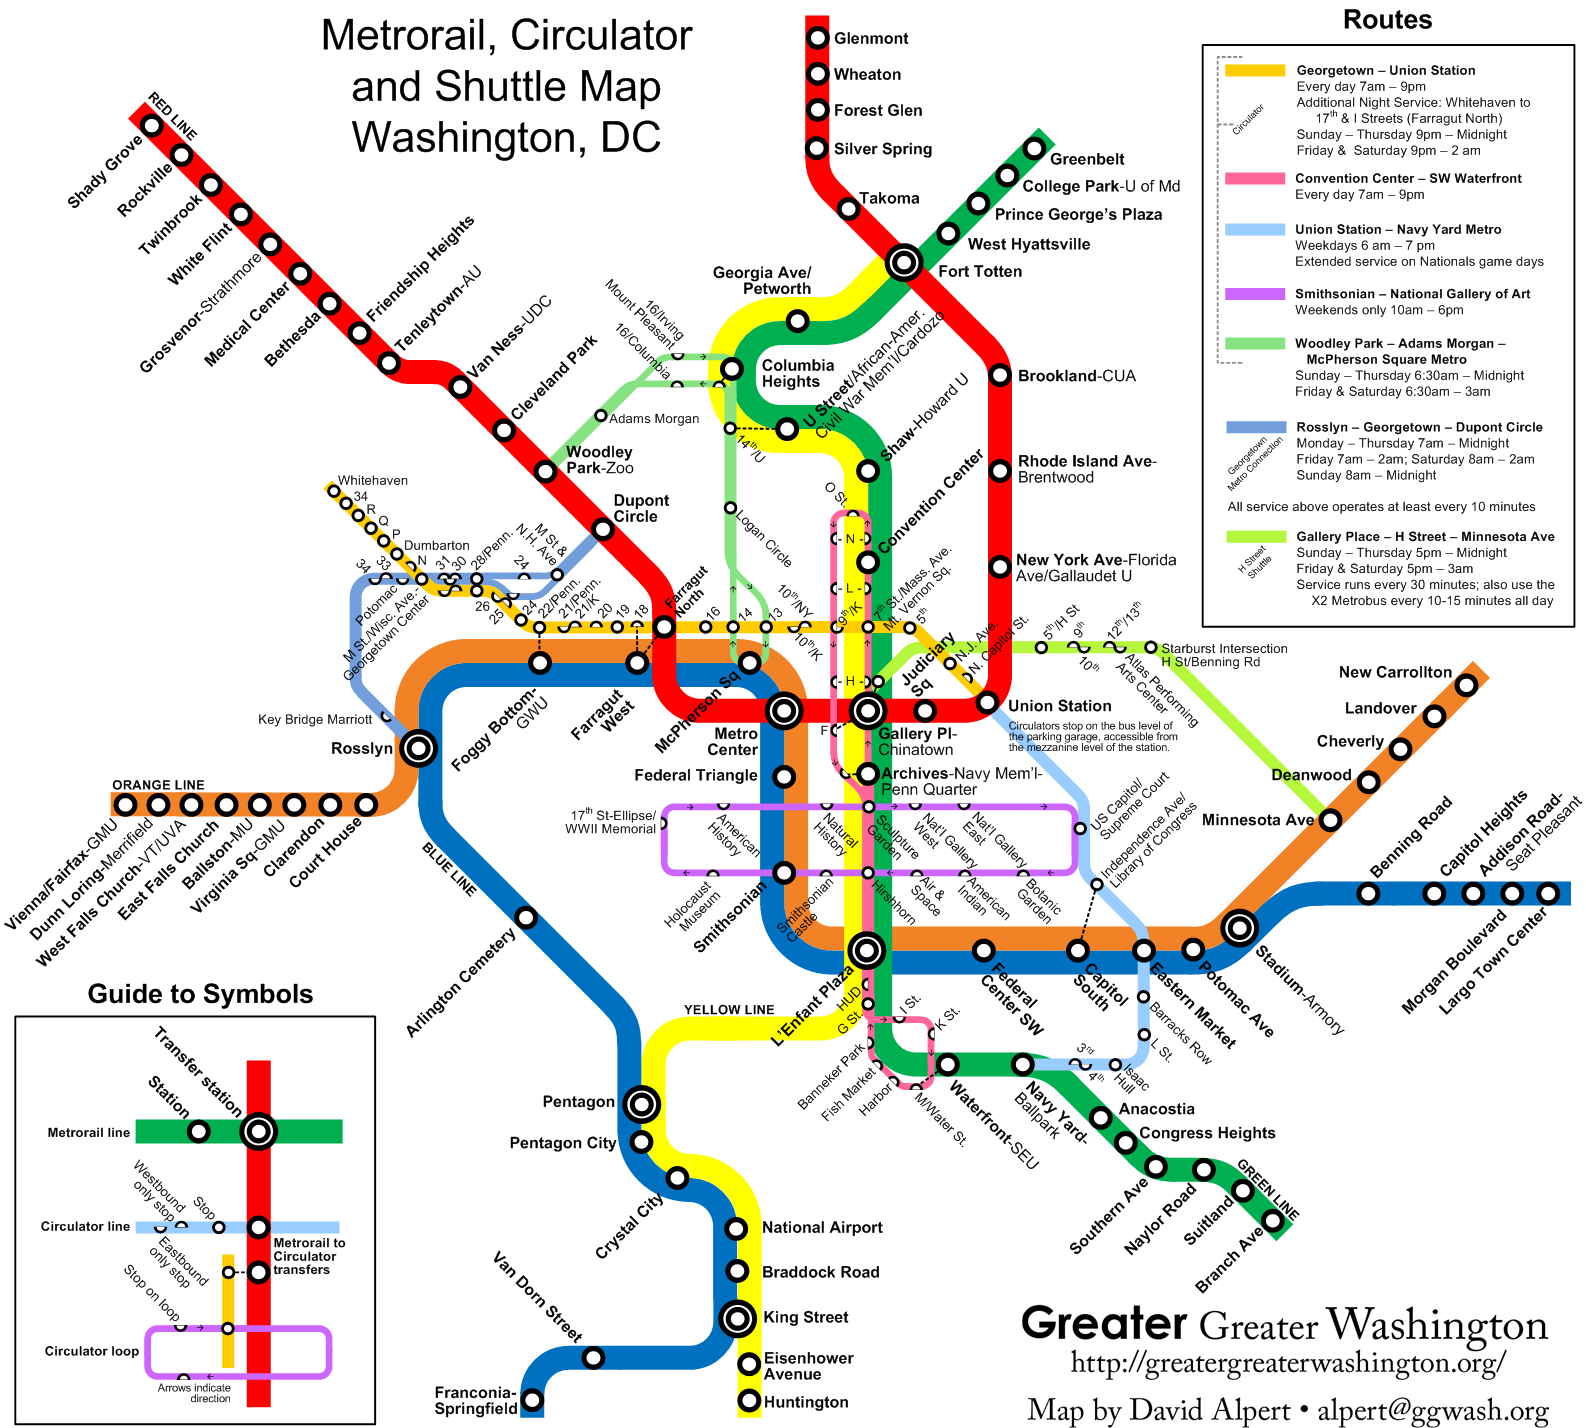 circulator-metro-map-version-2-greater-greater-washington